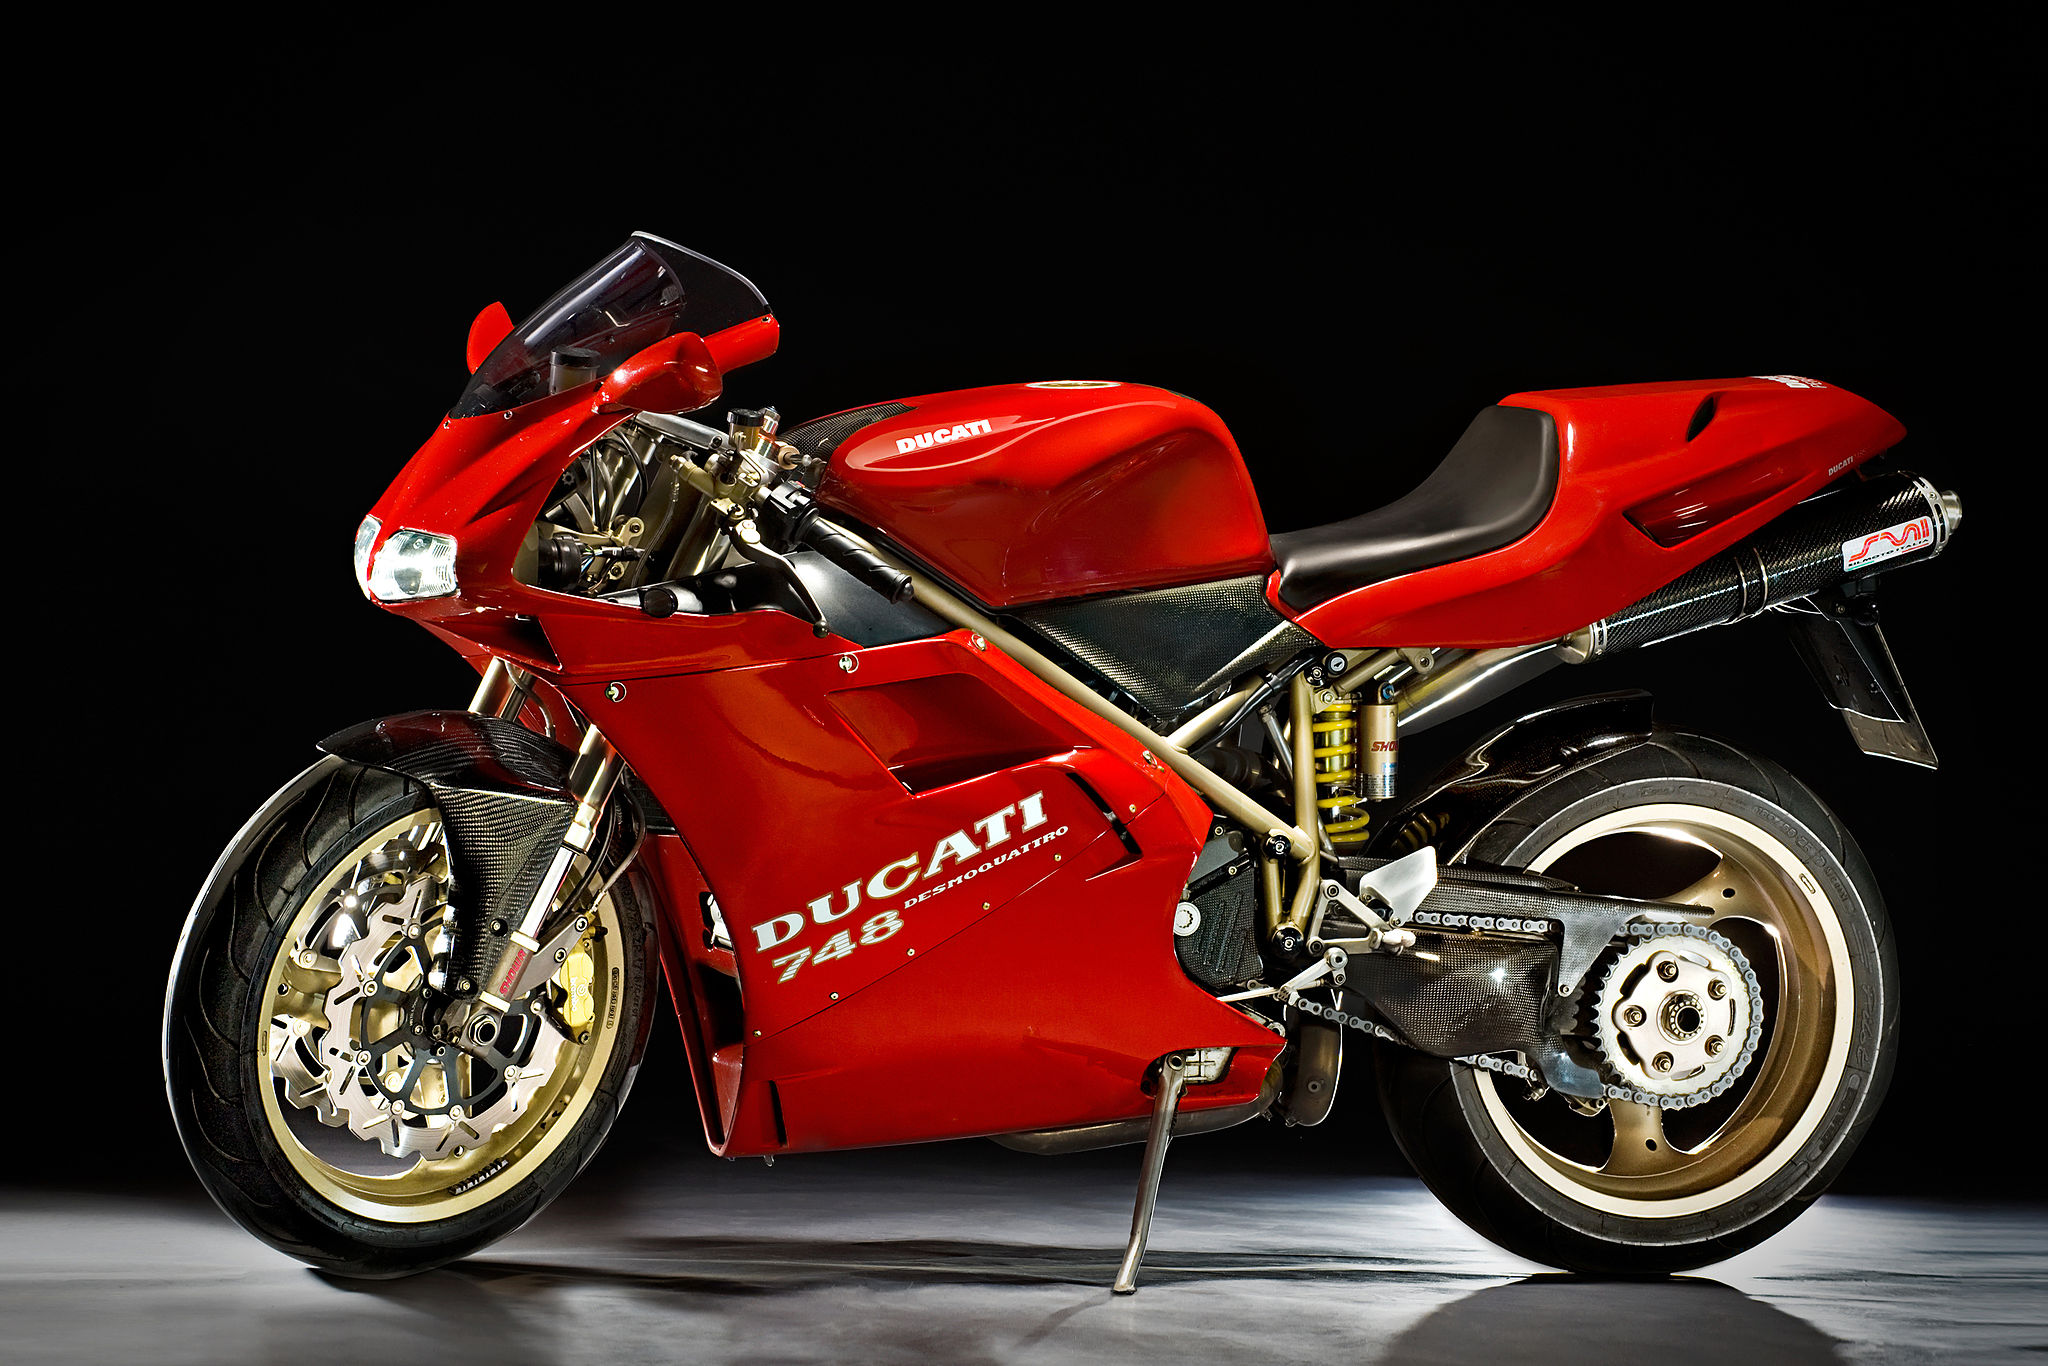 Ducati 748 19201080 HD Motorcycle Wallpaper